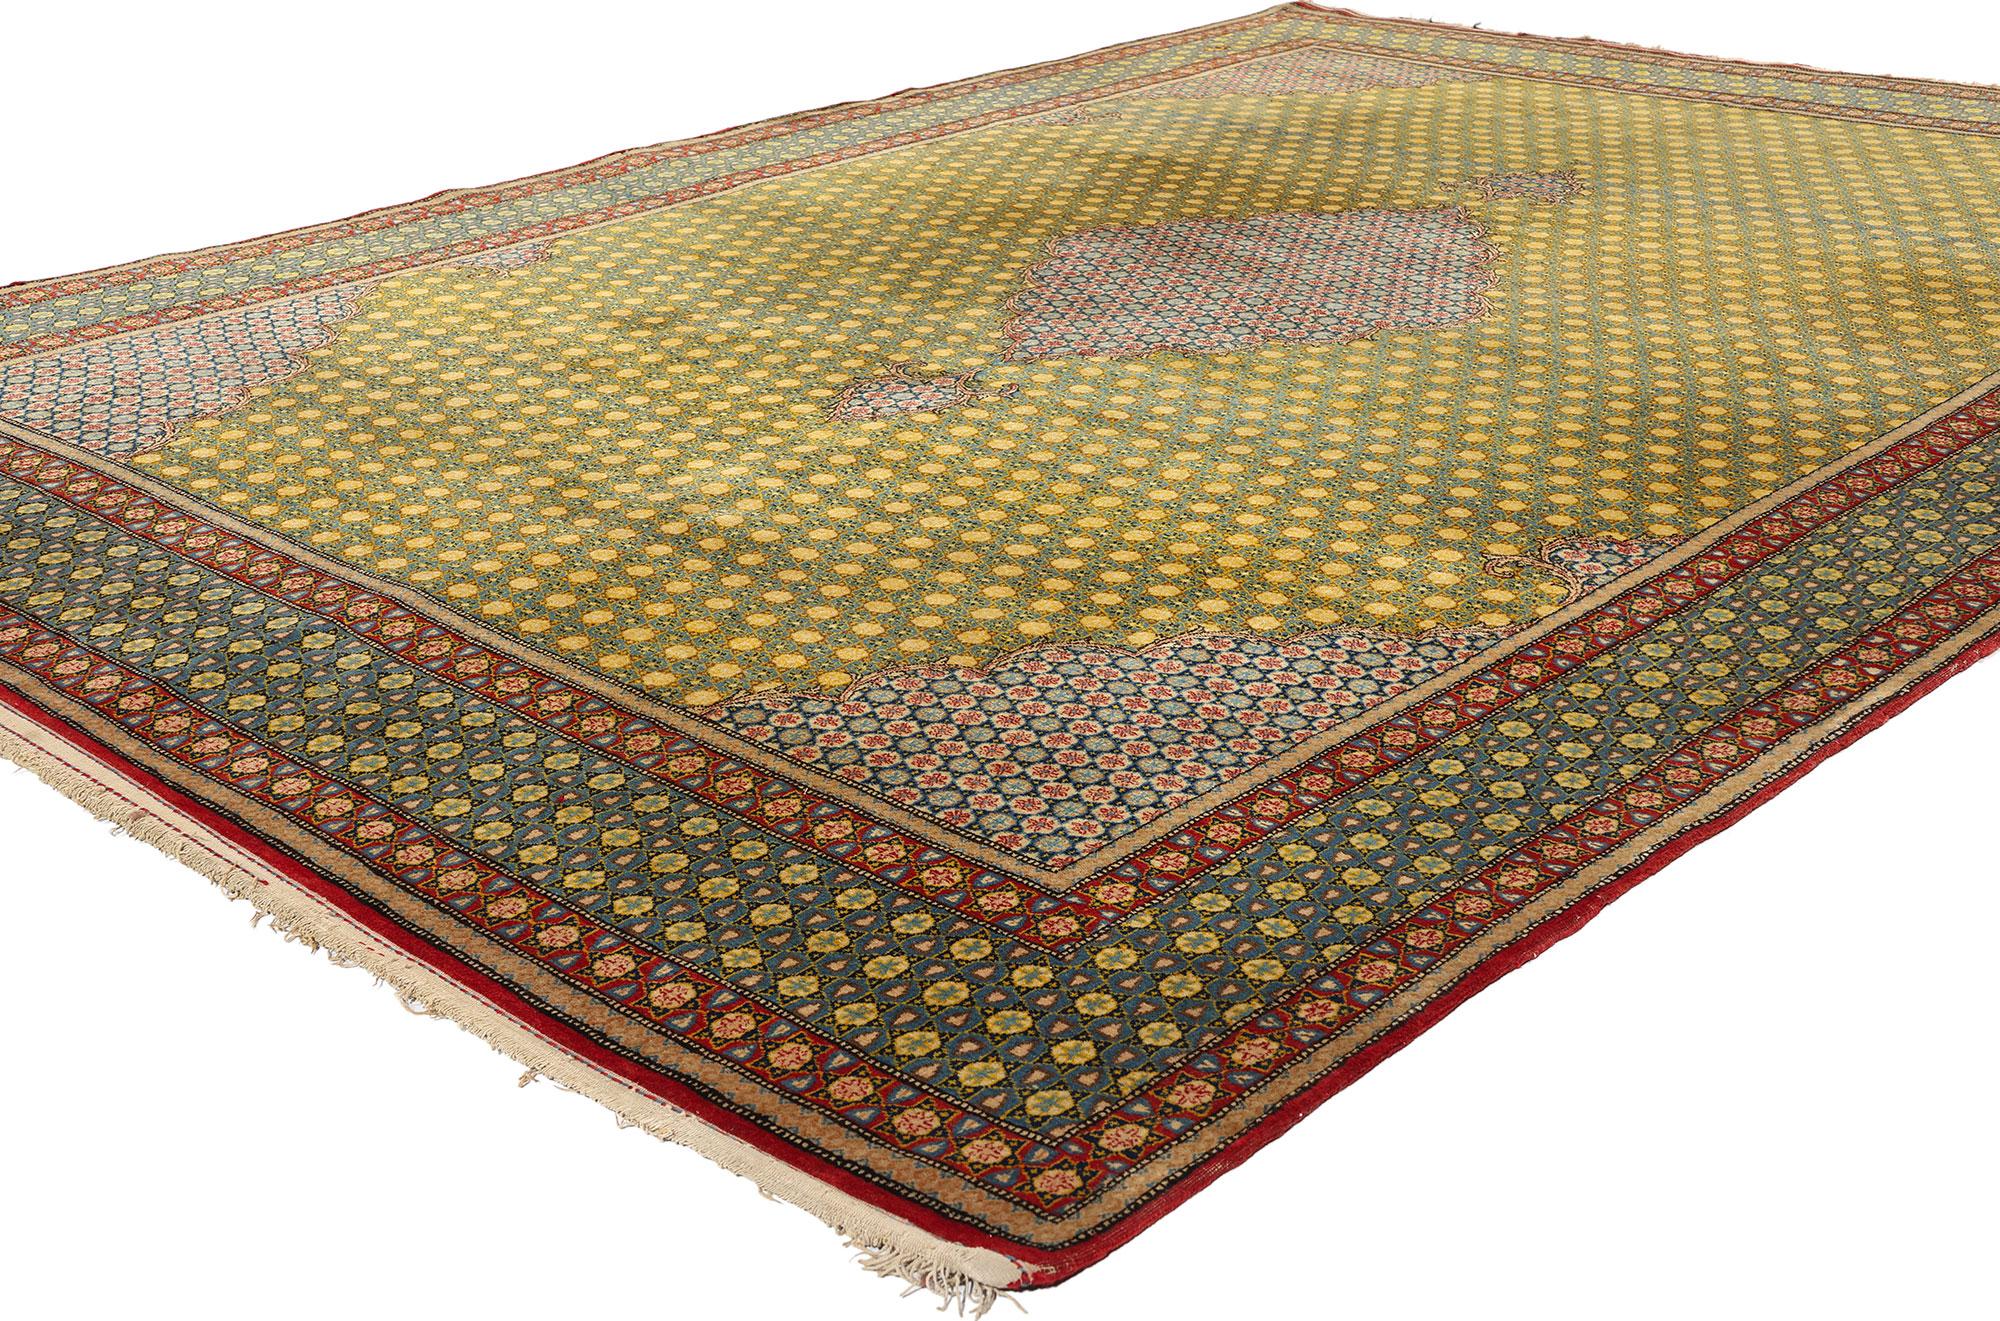 21683 Vintage Persian Tabriz Rug, 07'06 x 10'09. Täbris-Teppiche, die aus der historischen iranischen Stadt Täbris stammen, gelten als Höhepunkt der persischen Teppichweberei und sind für ihre komplizierten Designs und ihre hervorragende